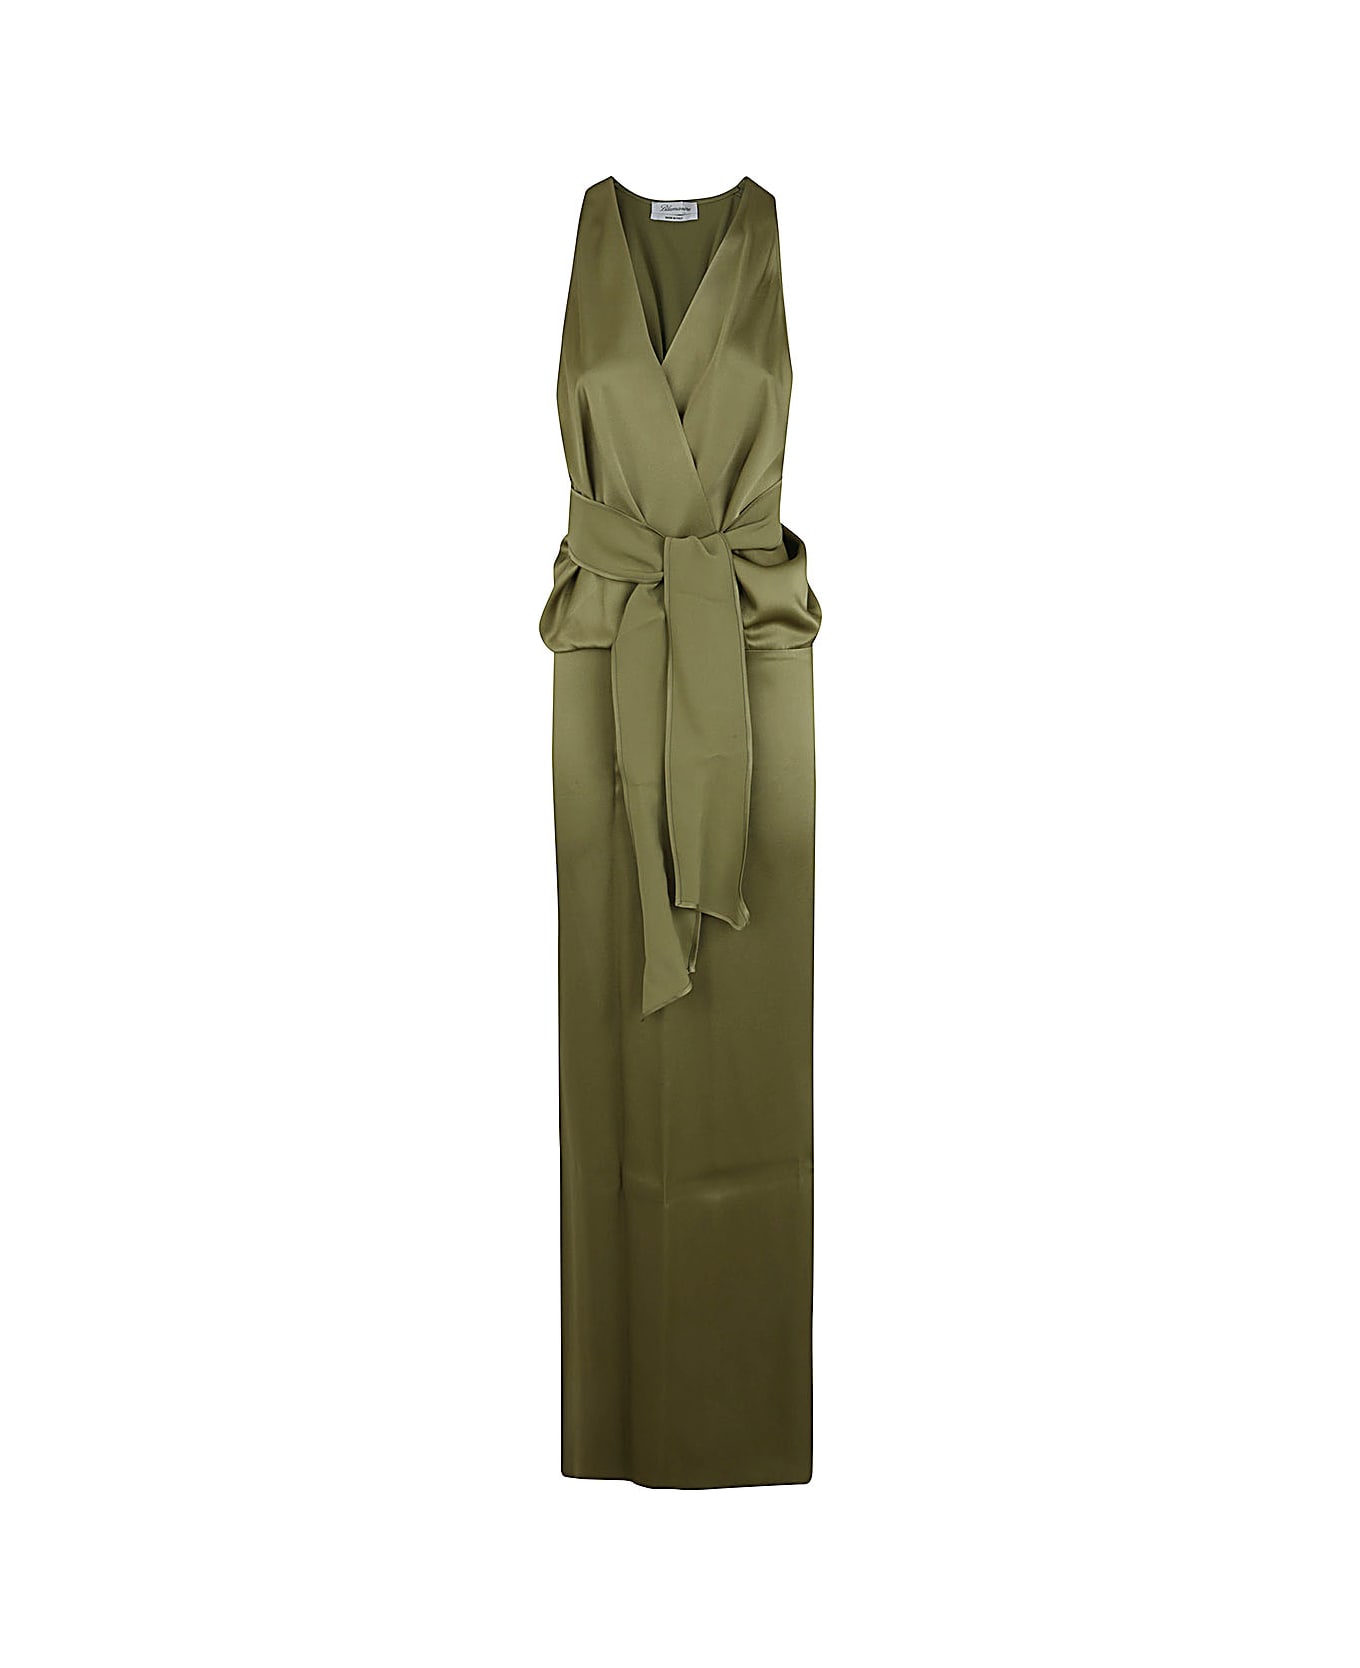 Blumarine 2a420a Long Dress - Gray Green